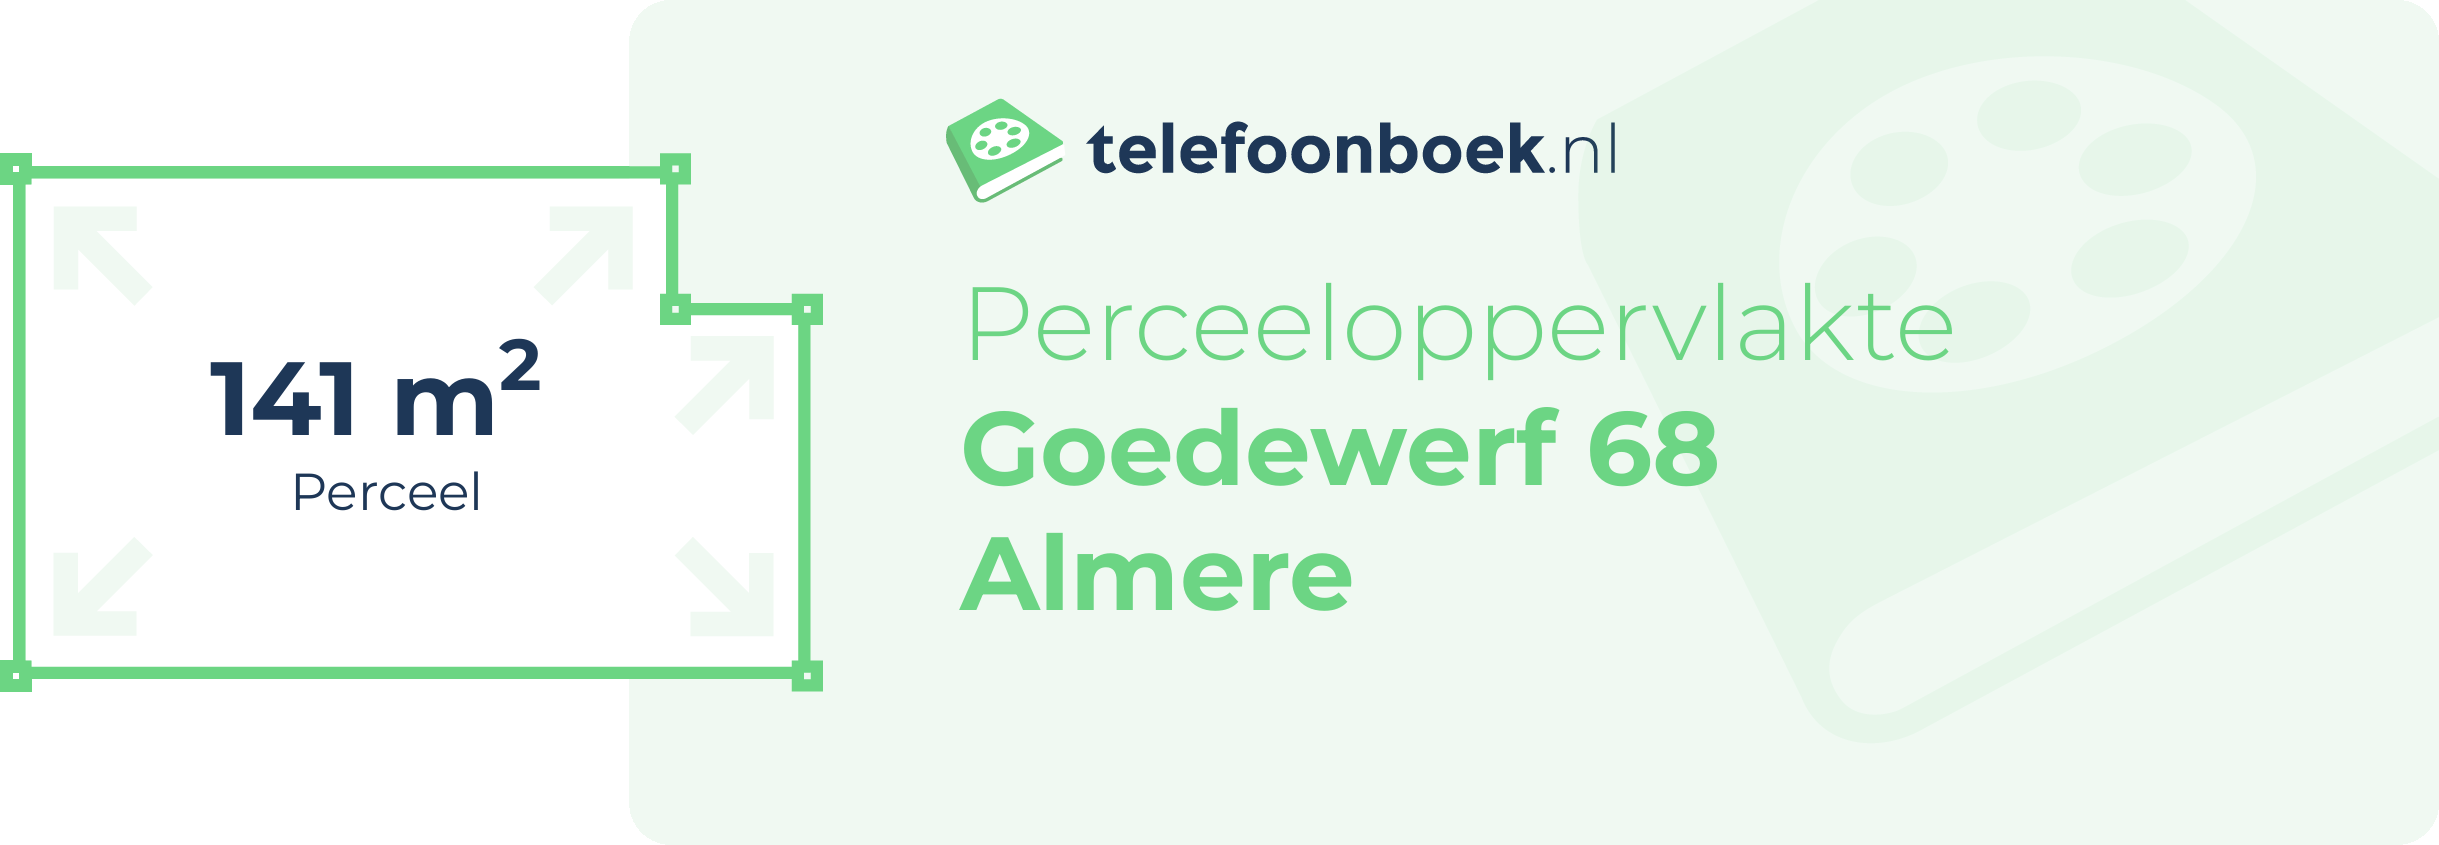 Perceeloppervlakte Goedewerf 68 Almere